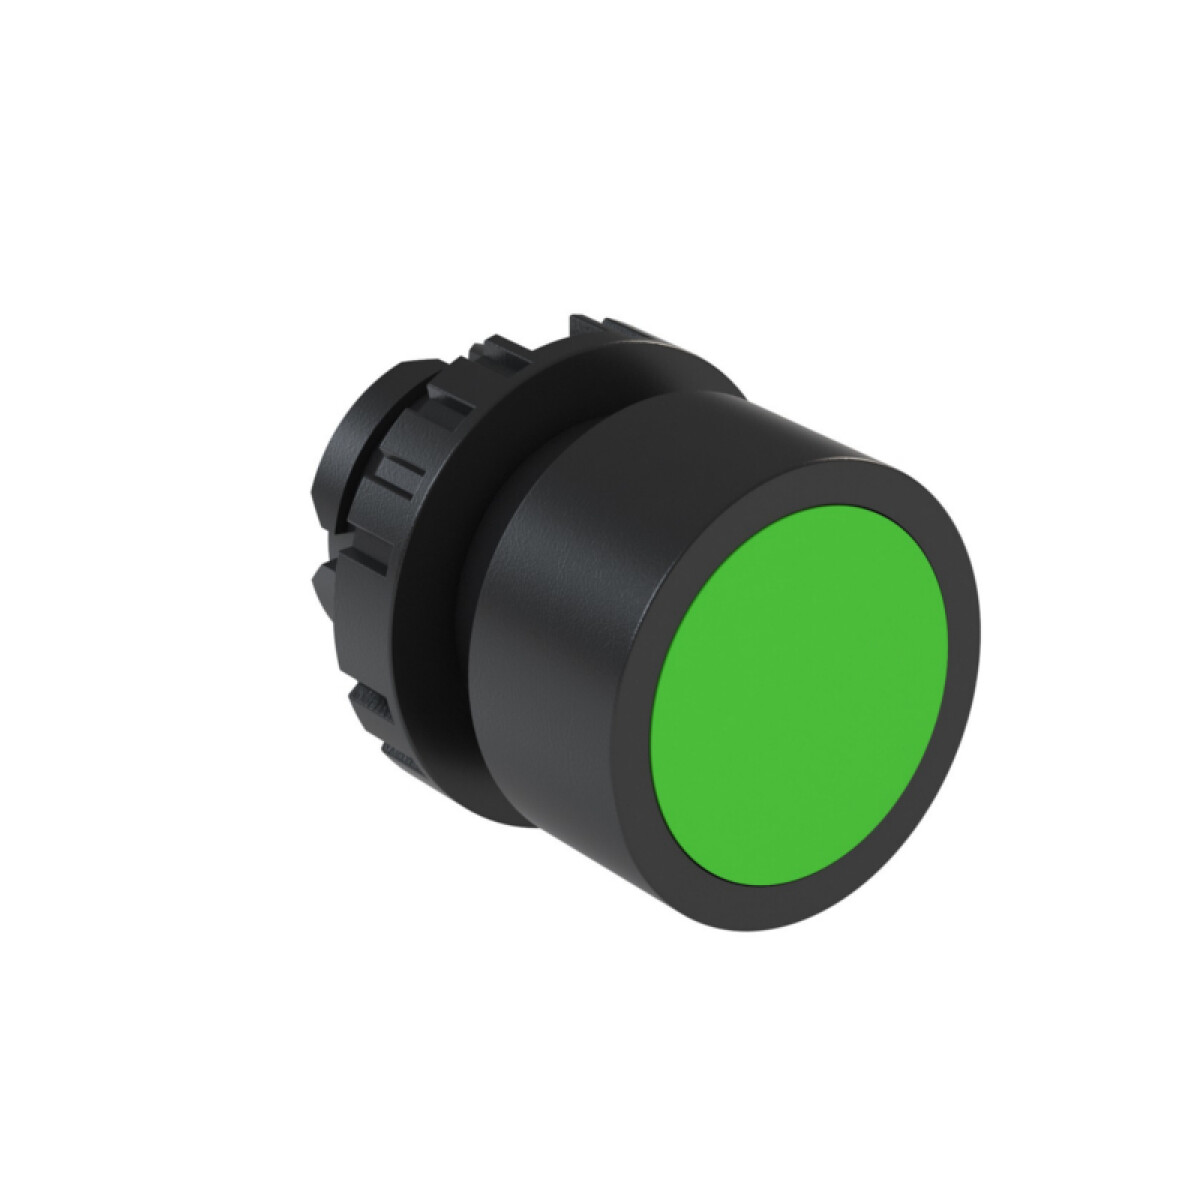 Cabezal pulsador rasante verde Ø22mm IP66, BF2 - WE5012 